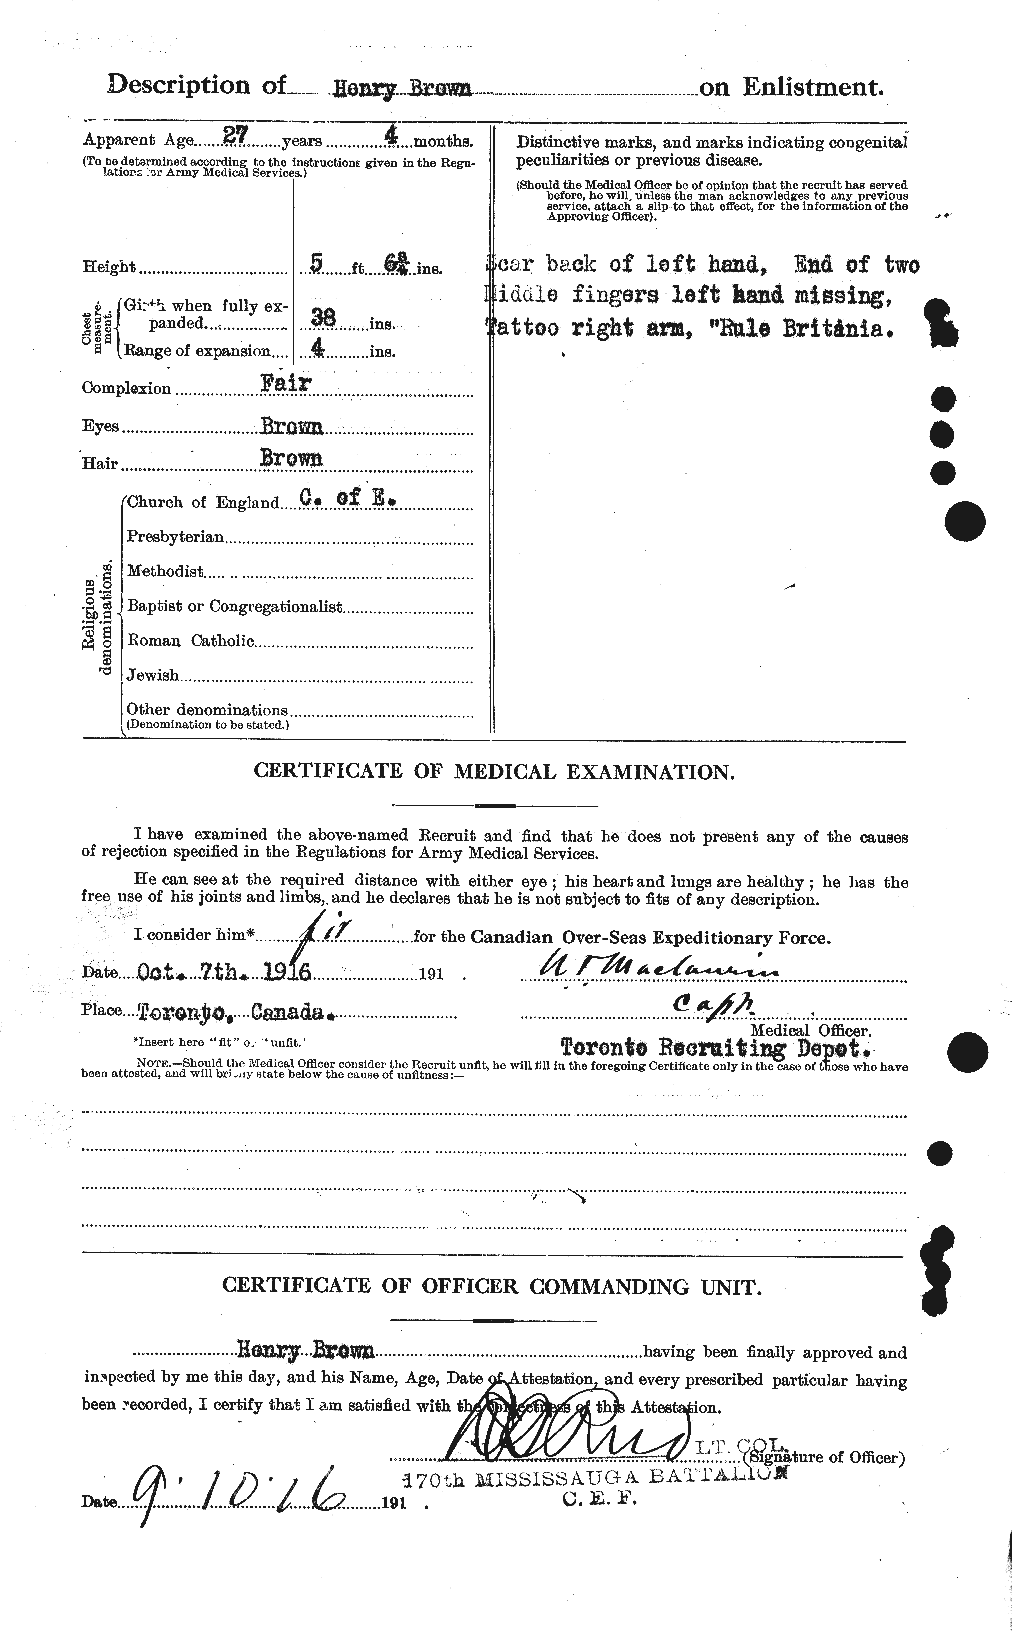 Dossiers du Personnel de la Première Guerre mondiale - CEC 265502b